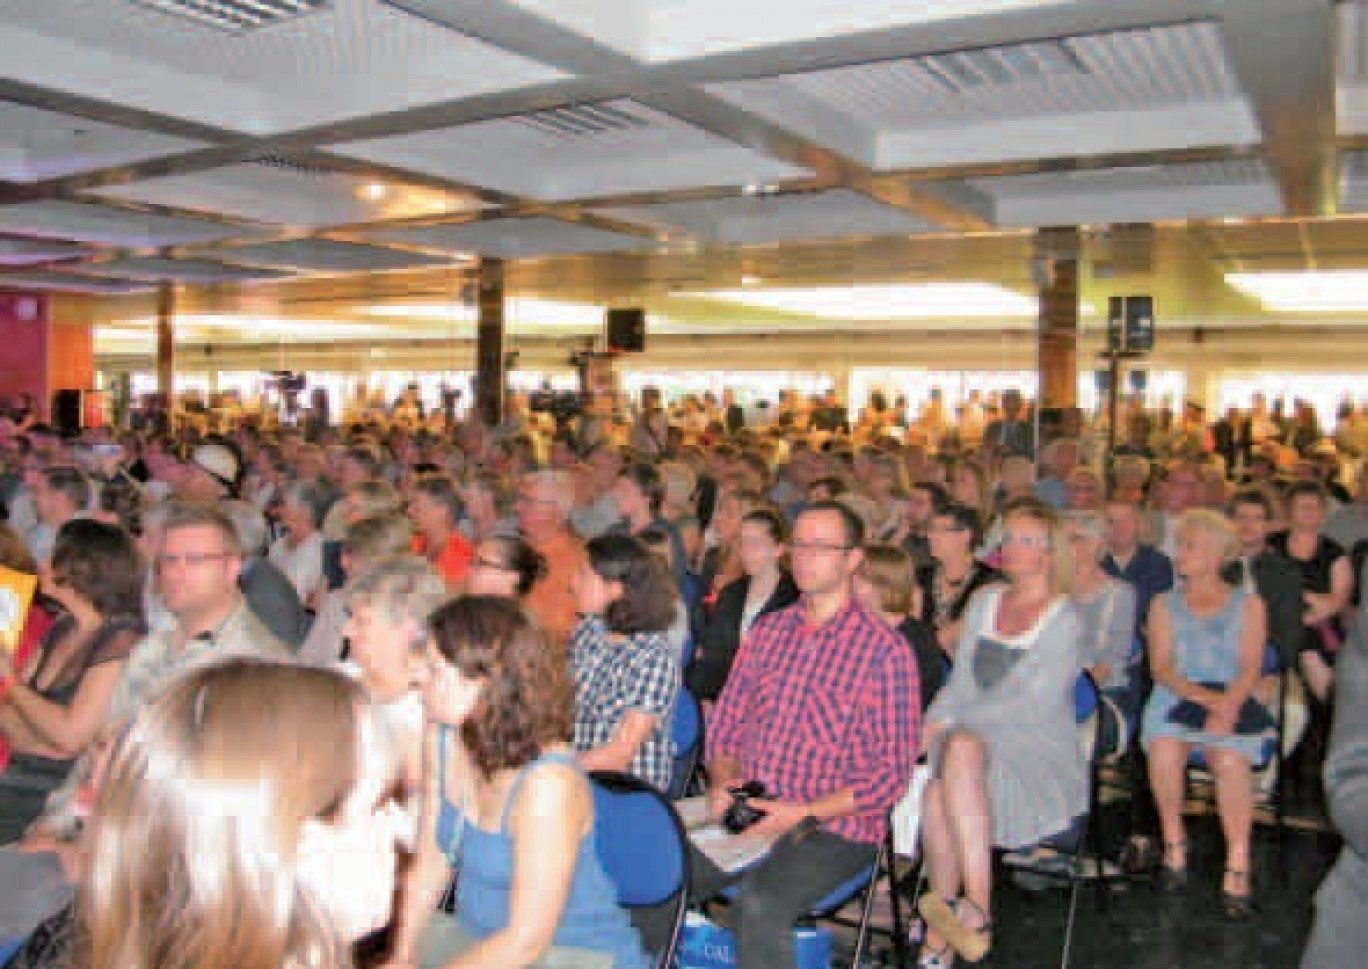 Près de 300 personnes s’étaient rassemblées dans le grand salon de Bollaert pendant que d’autres suivaient la réunion depuis les gradins.